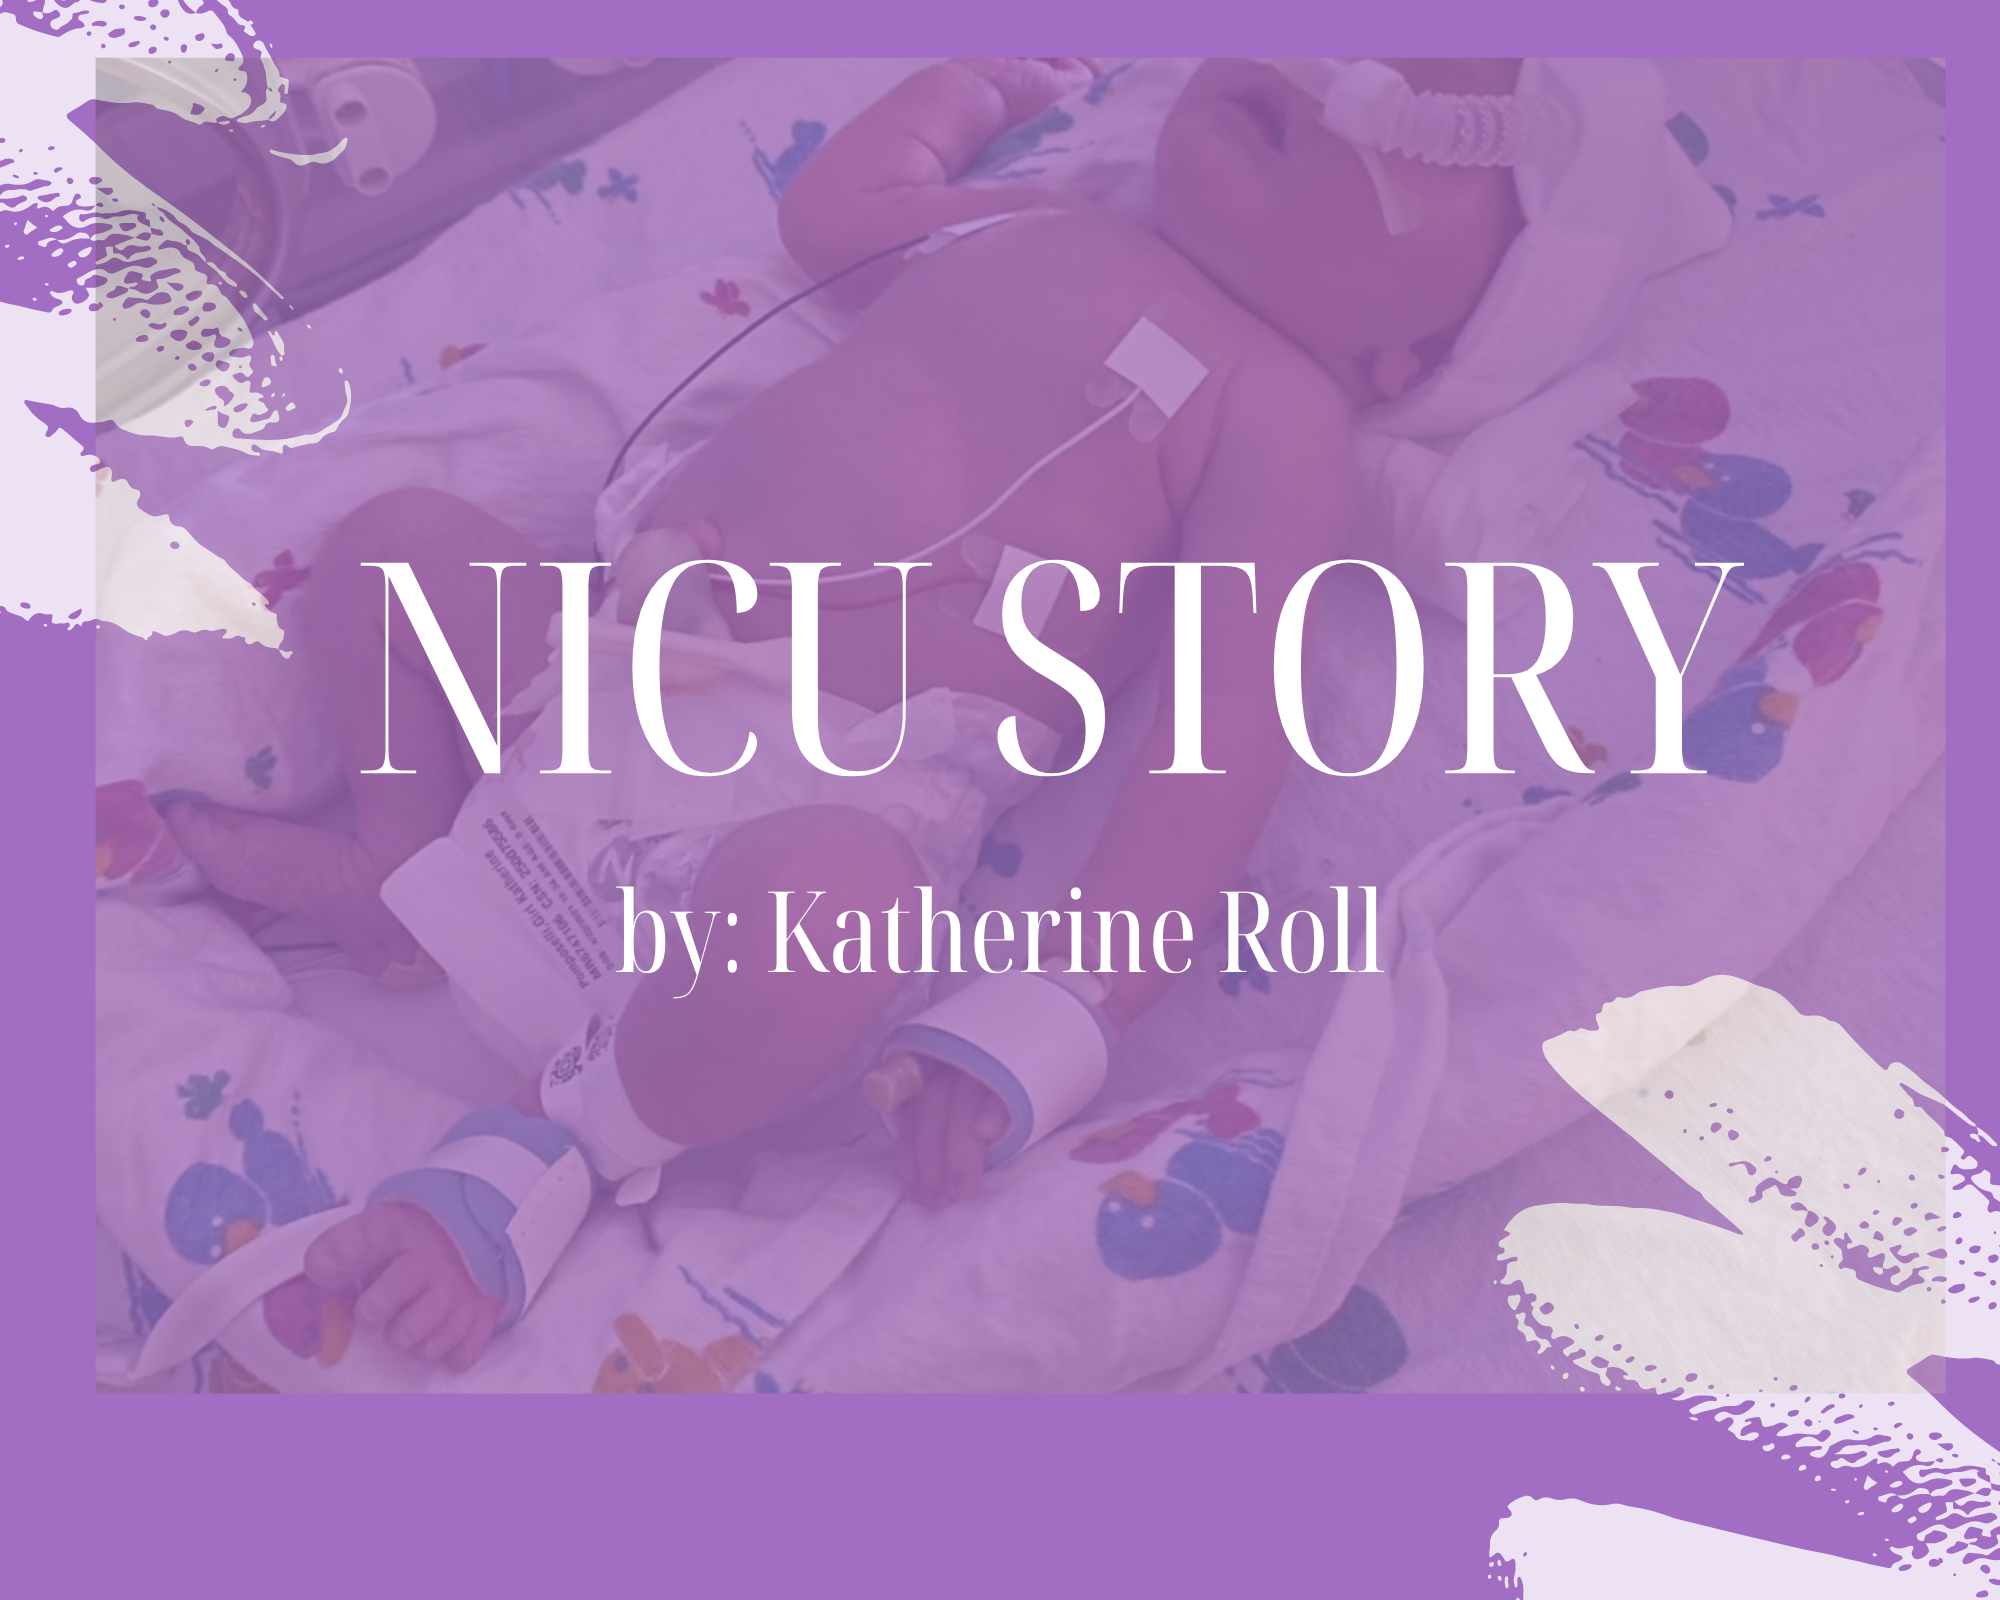 NICU STORY BY KATHERINE ROLL